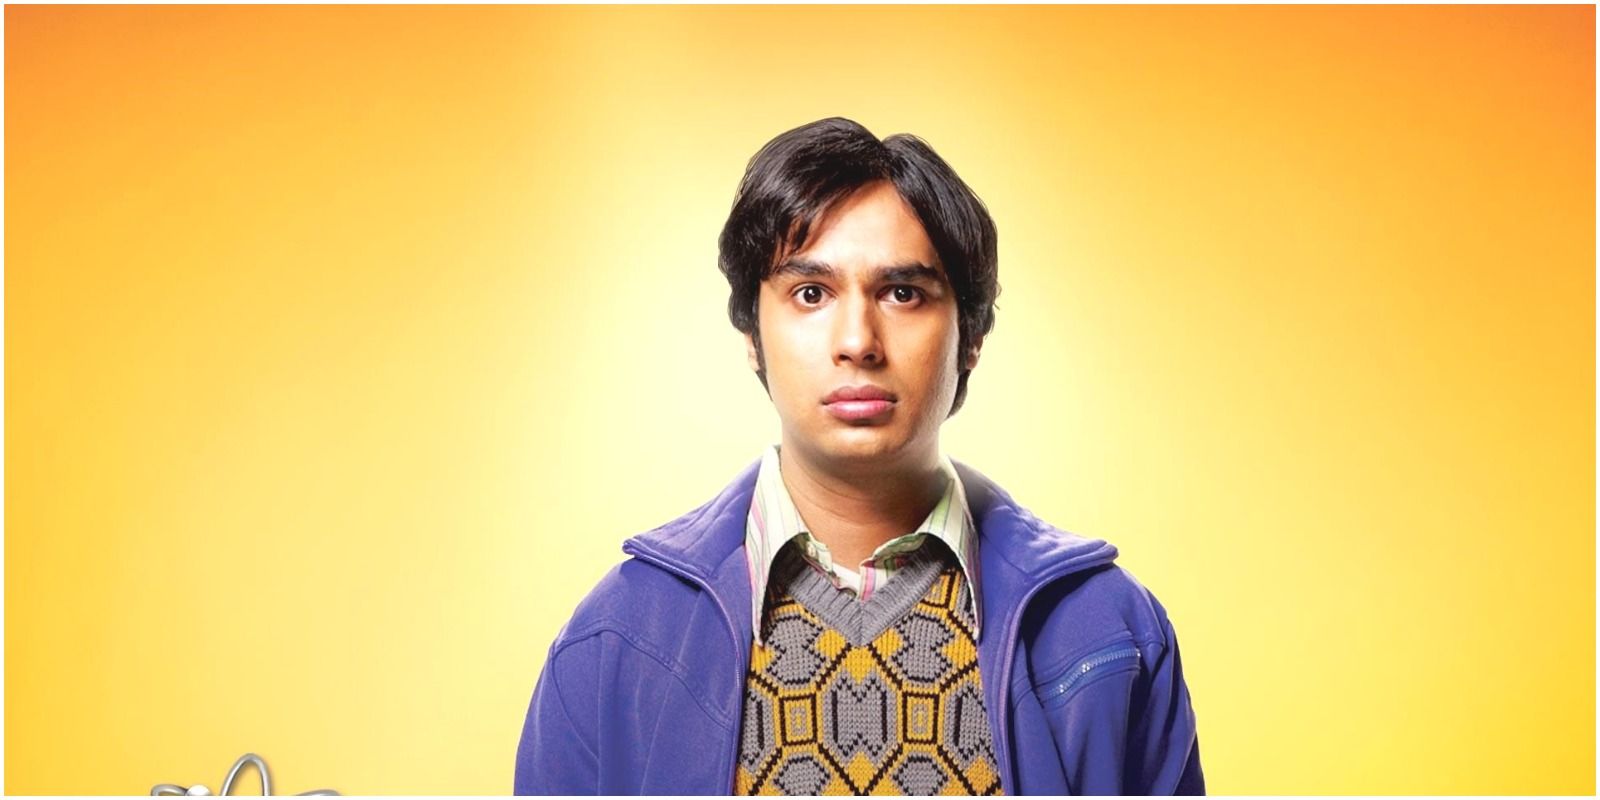 Raj from the Big Bang Theory